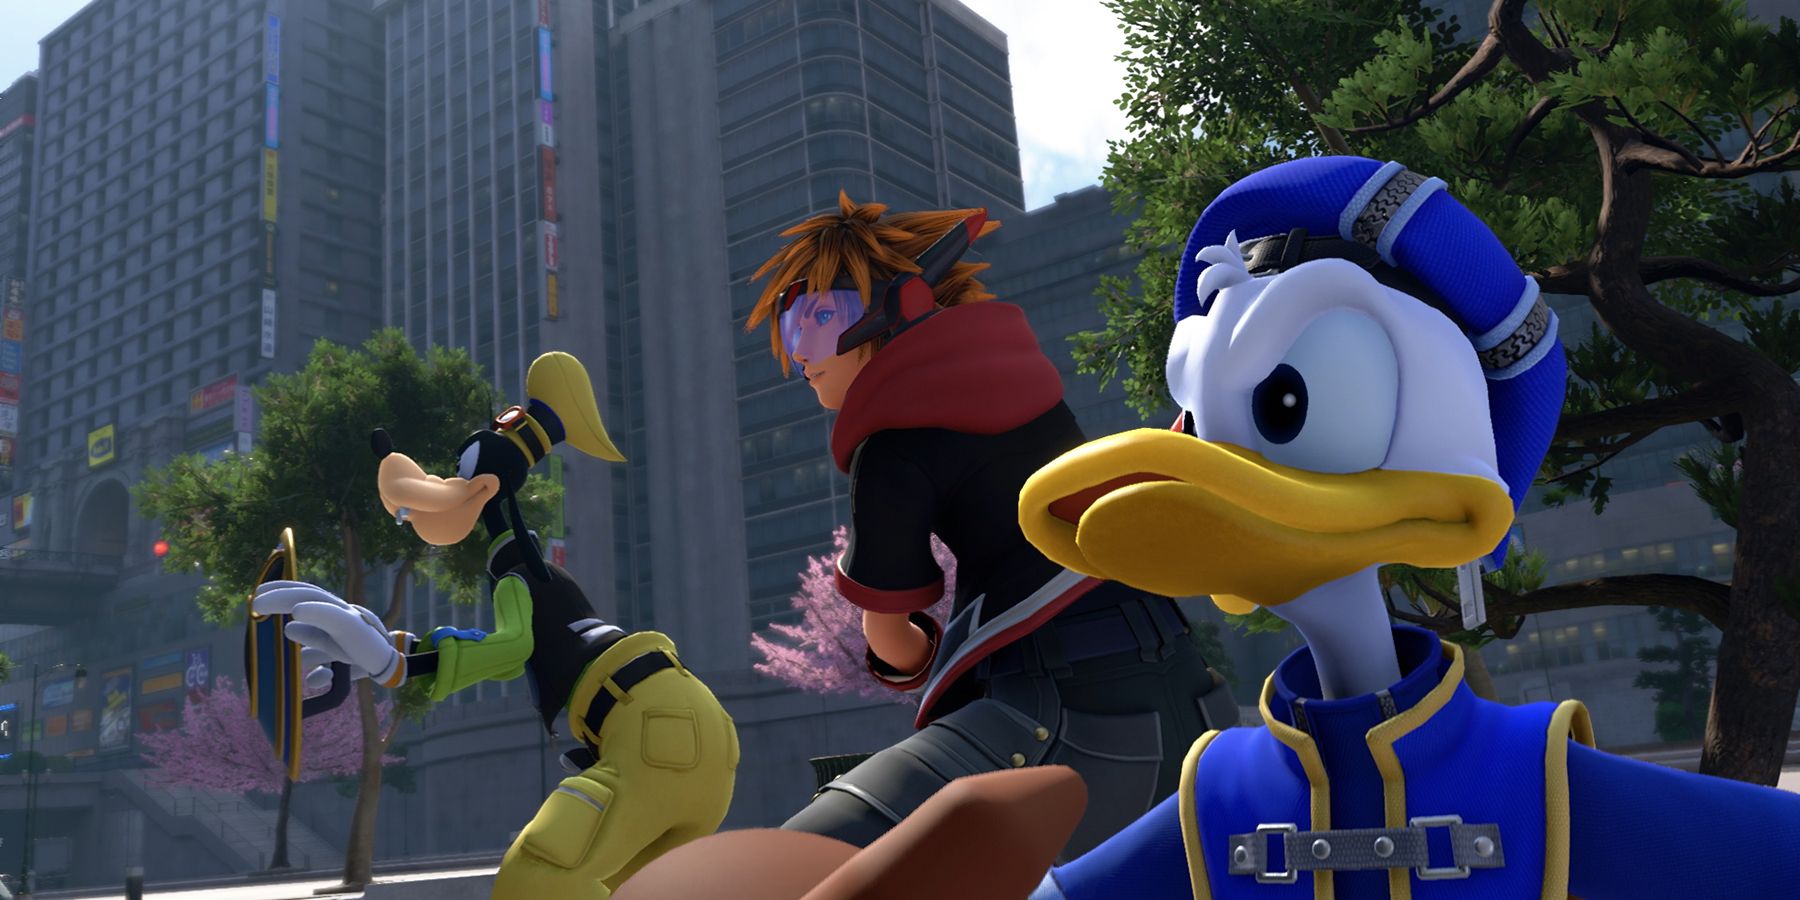 Sora, Goofy, and Donald in Kingdom Hearts 3 